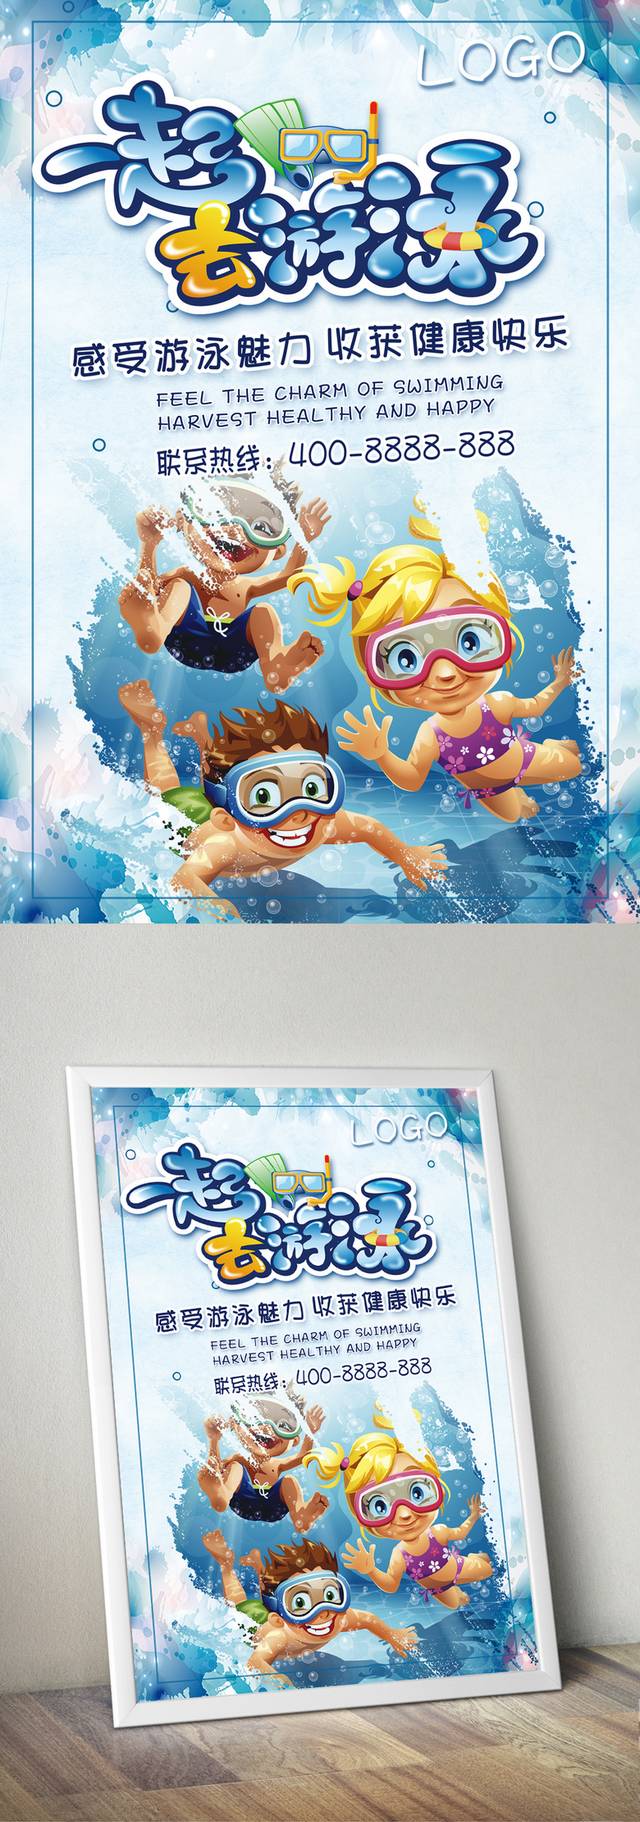 少儿游泳培训班招生宣传海报PSD模板